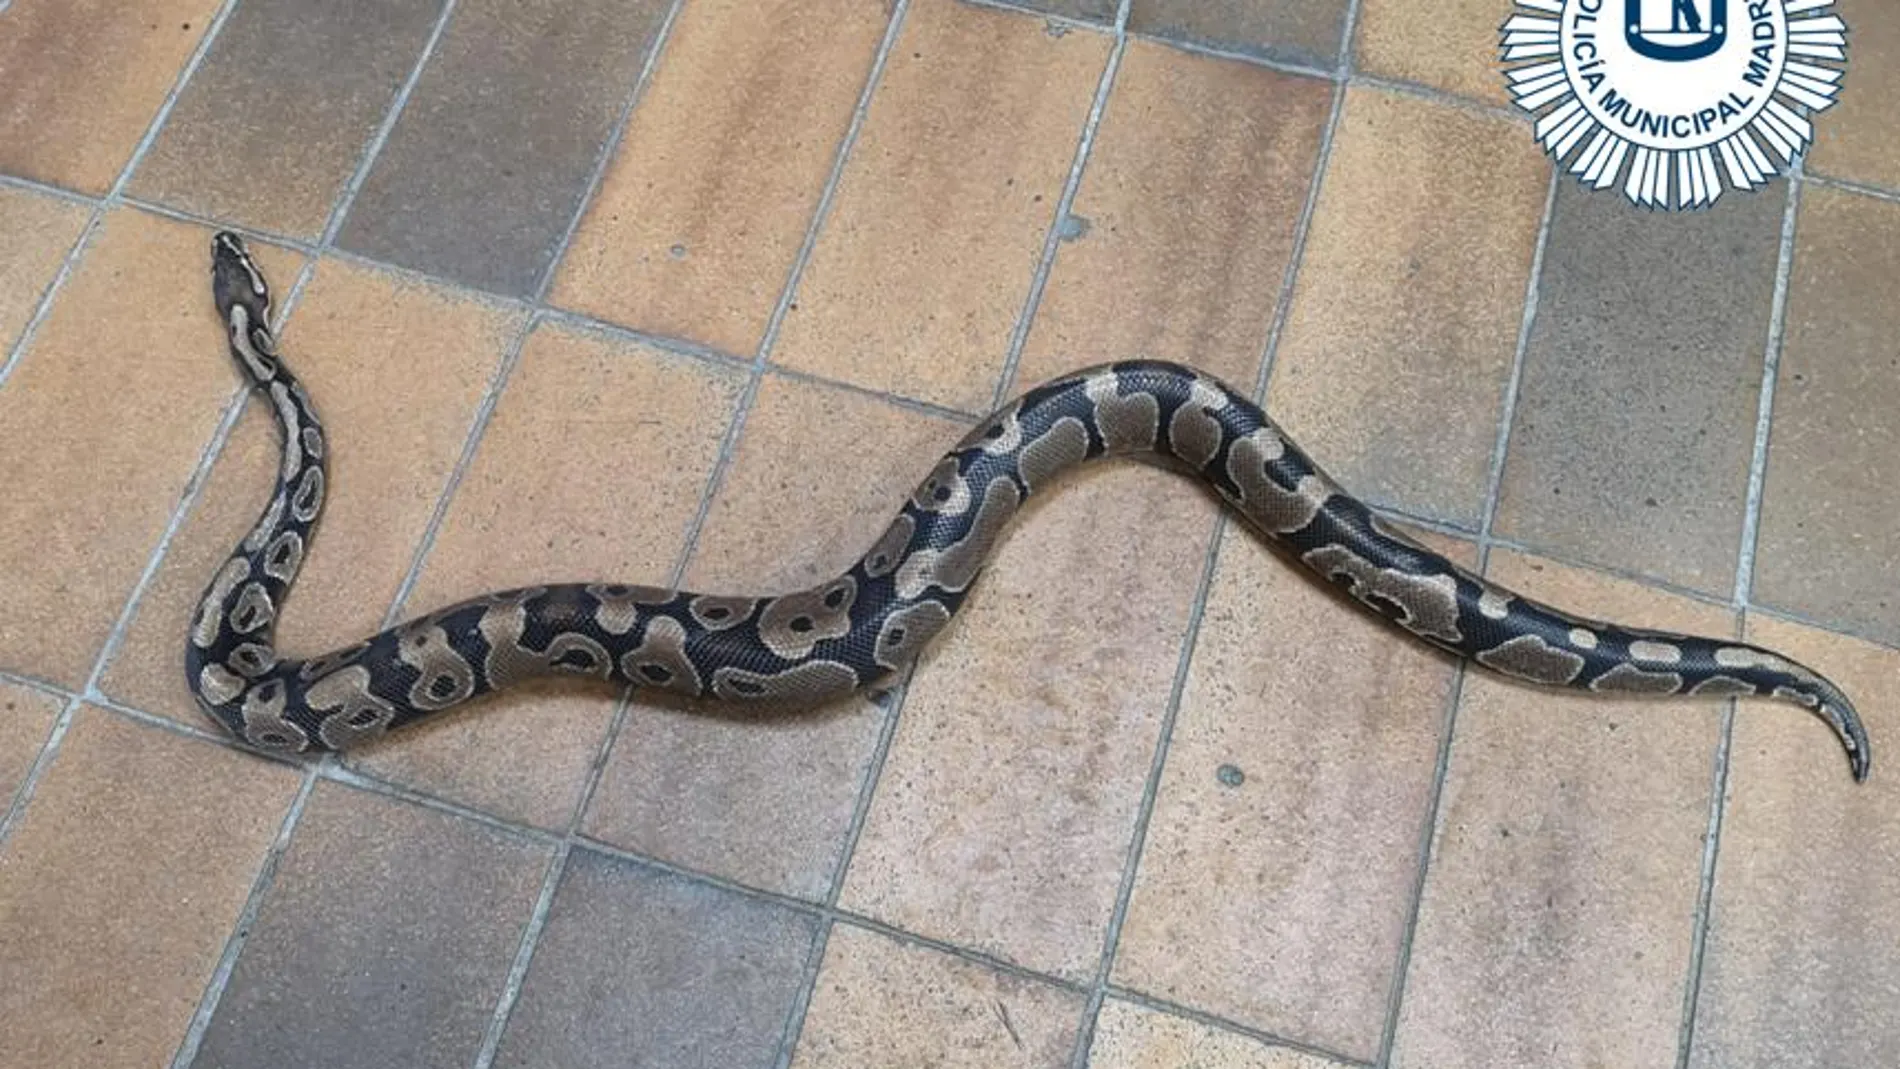 La Policía Municipal de Madrid capturó una serpiente de pitón en la cocina de una casa en Villa de Vallecas